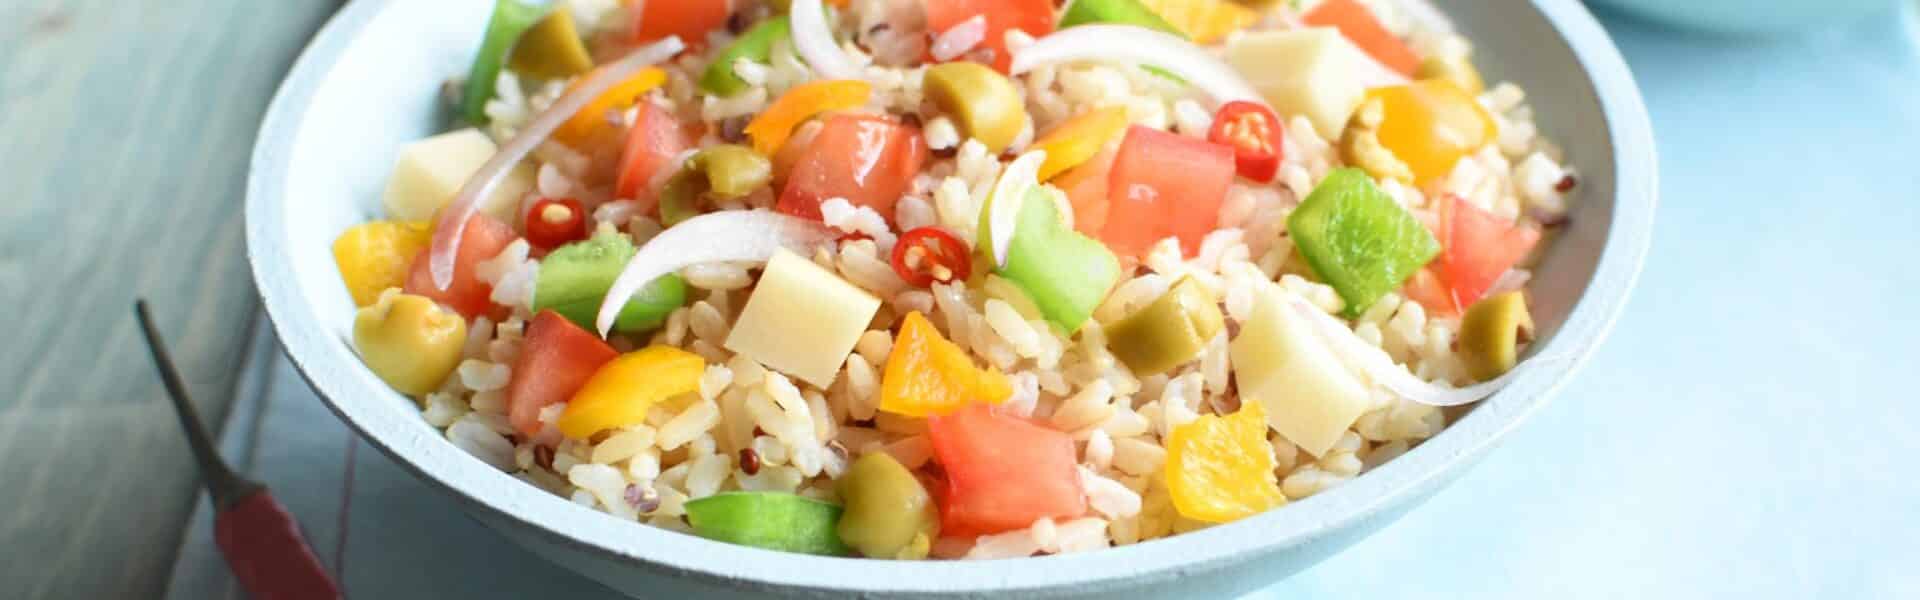 Salade de riz façon basquaise - 3098